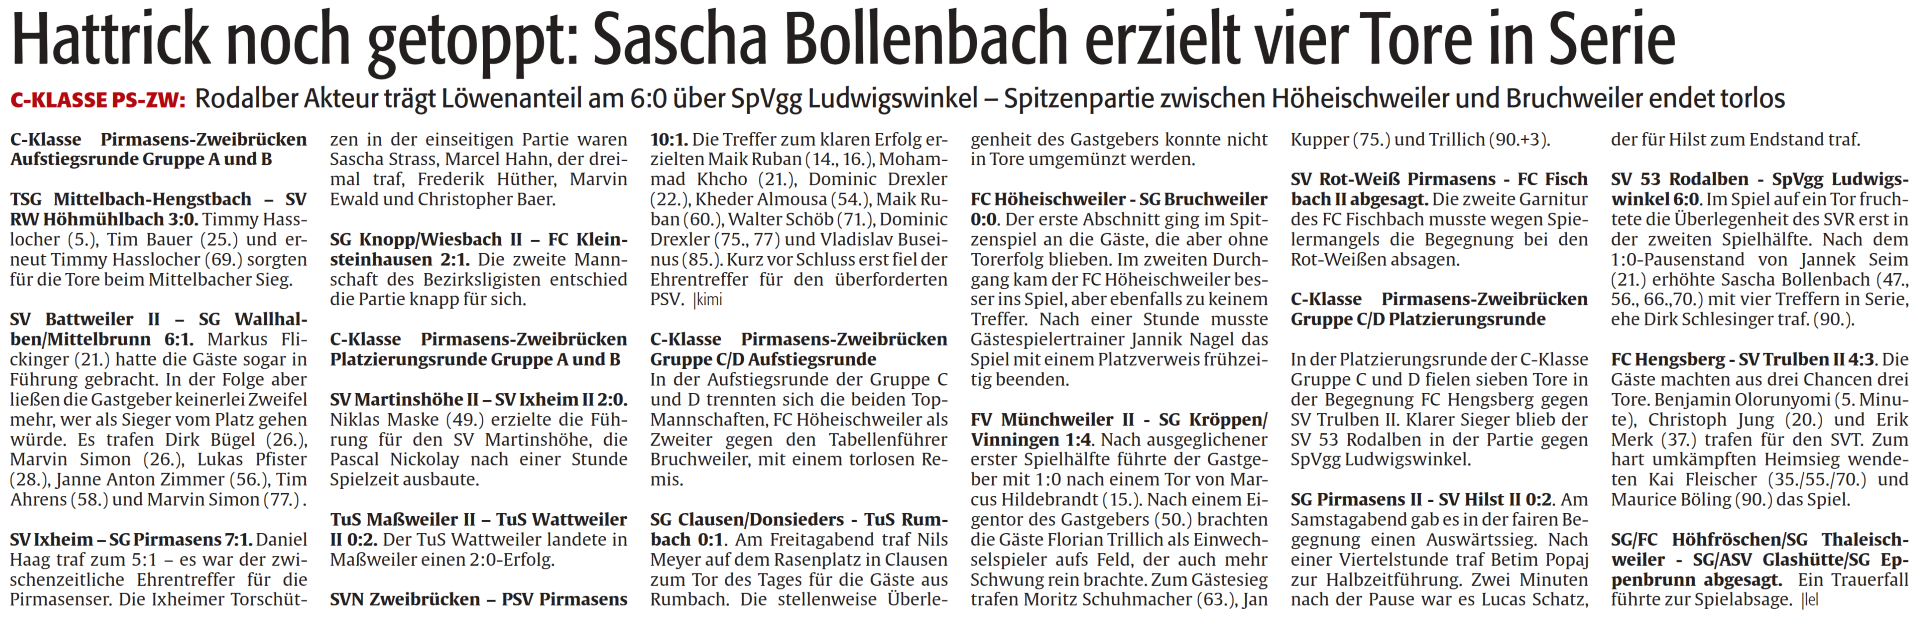 Hattrick noch getoppt: Sascha Bollenbach erzielt vier Tore in Serie